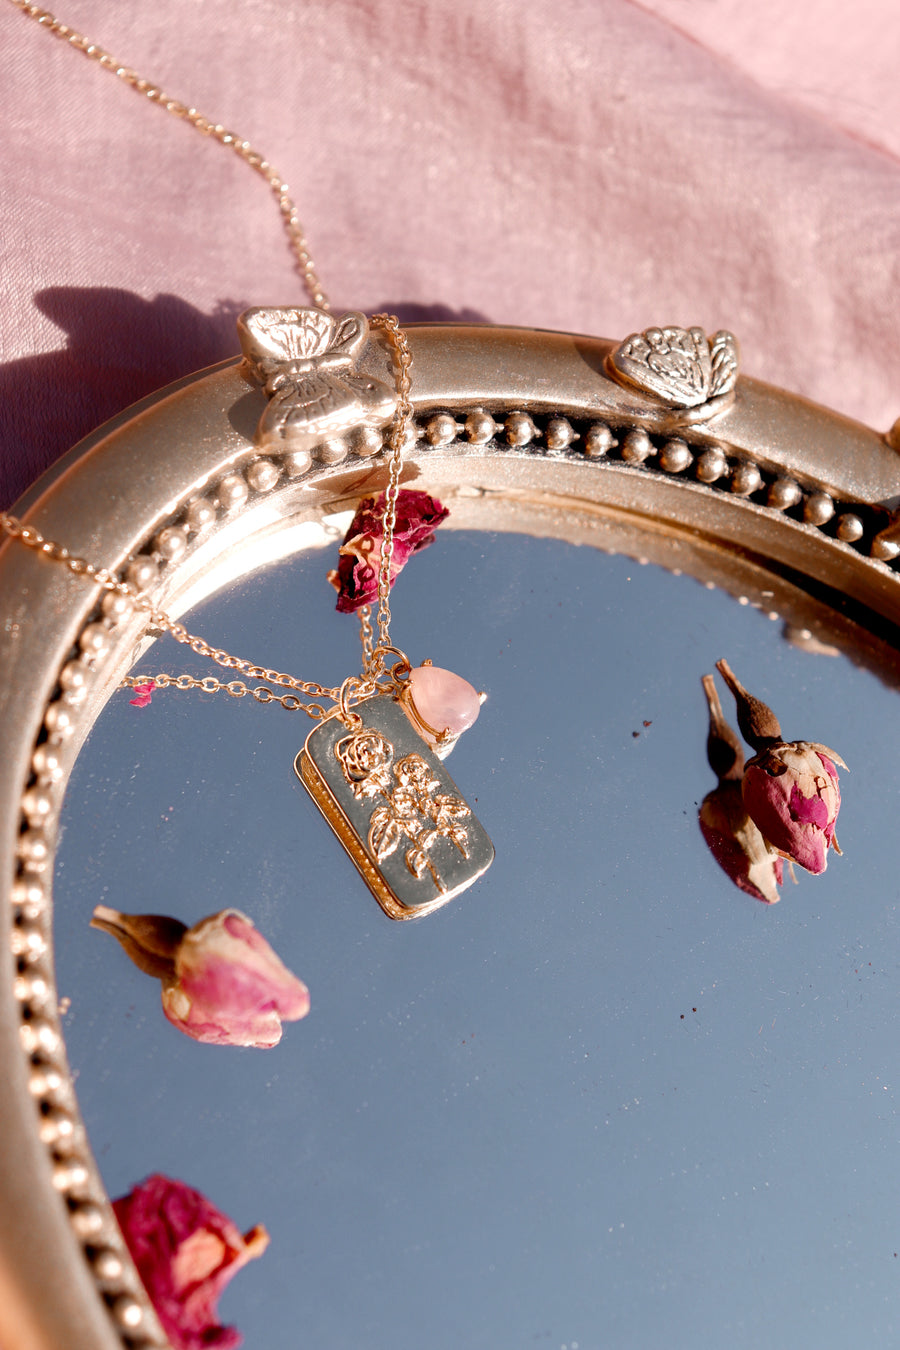 The mystic rose | rose quartz necklace